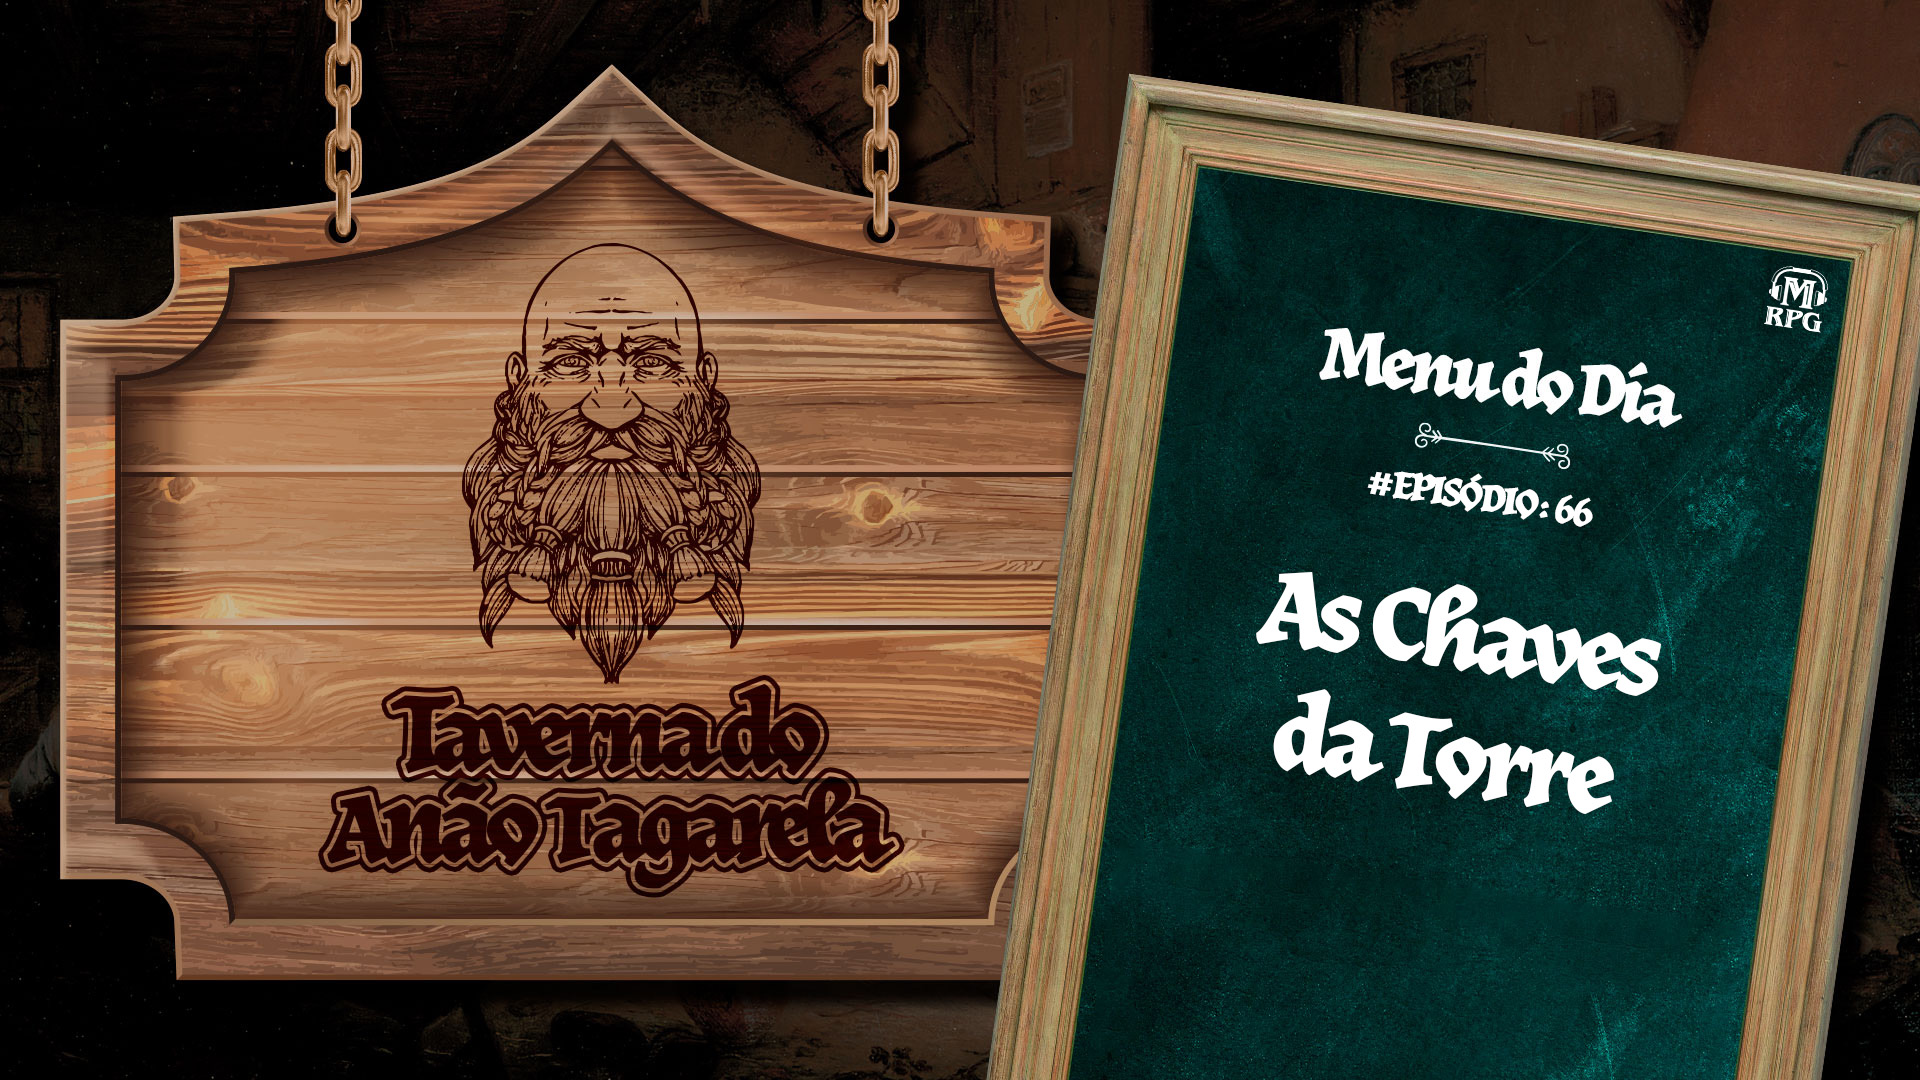 As Chaves da Torre – Taverna do Anão Tagarela #66